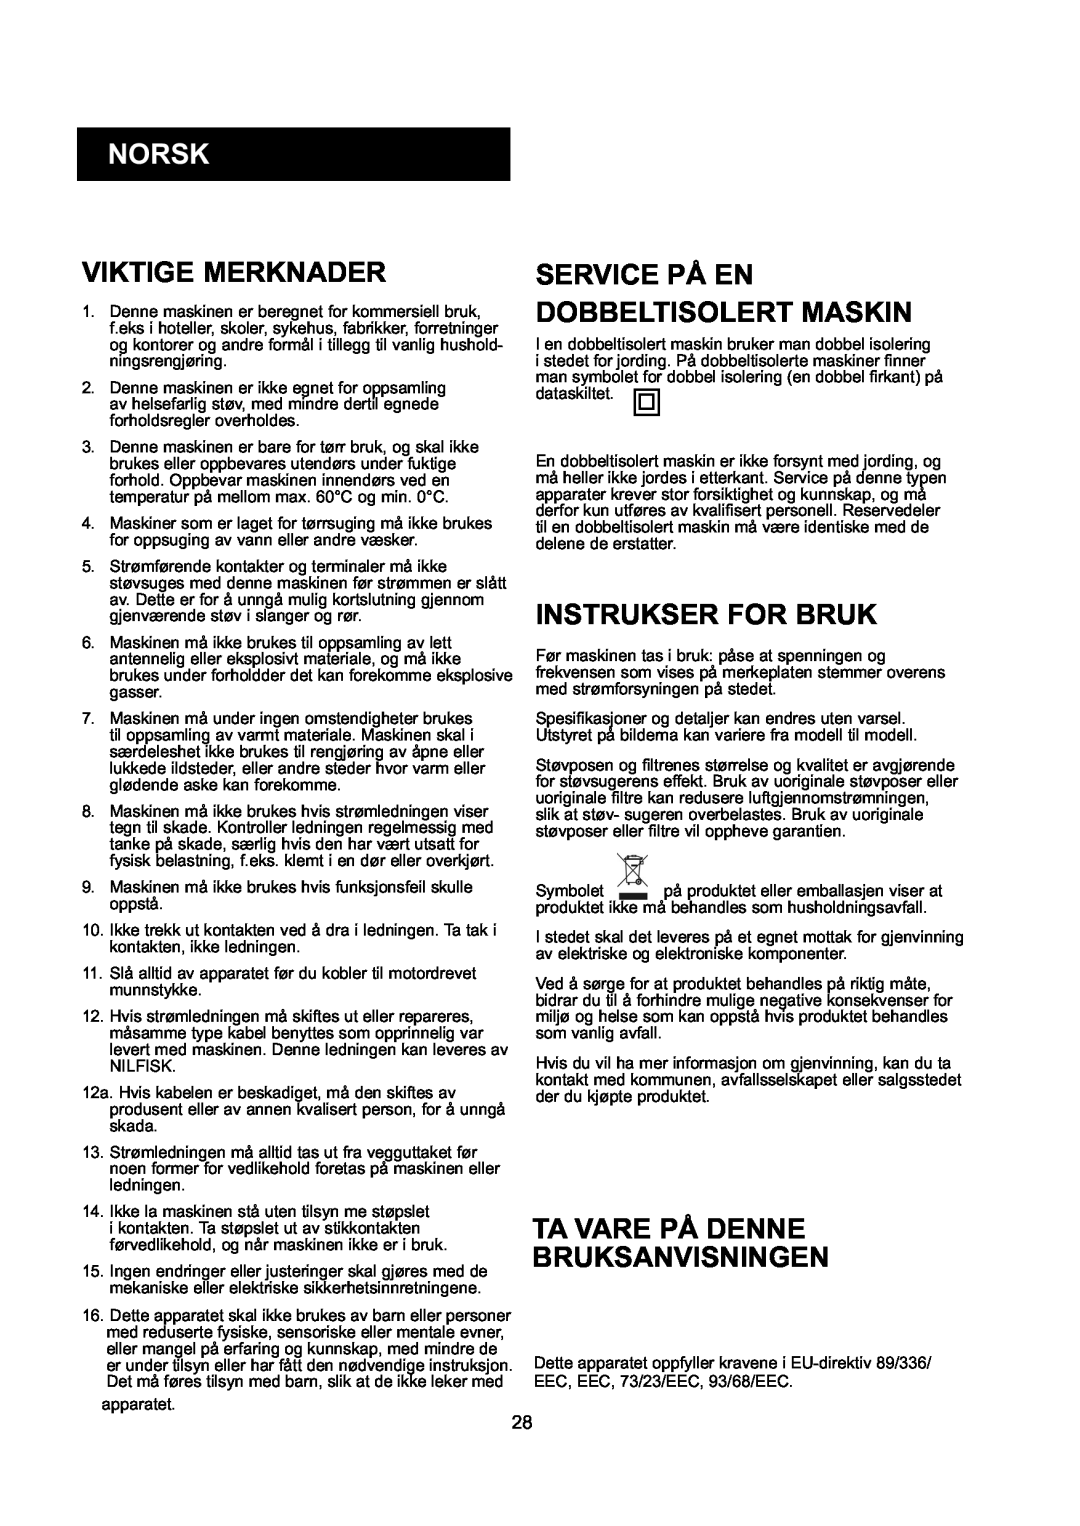 Nilfisk-ALTO GD 10 Back, GD 5 Back manual Norsk, Viktige Merknader, Instrukser For Bruk, Ta Vare På Denne Bruksanvisningen 